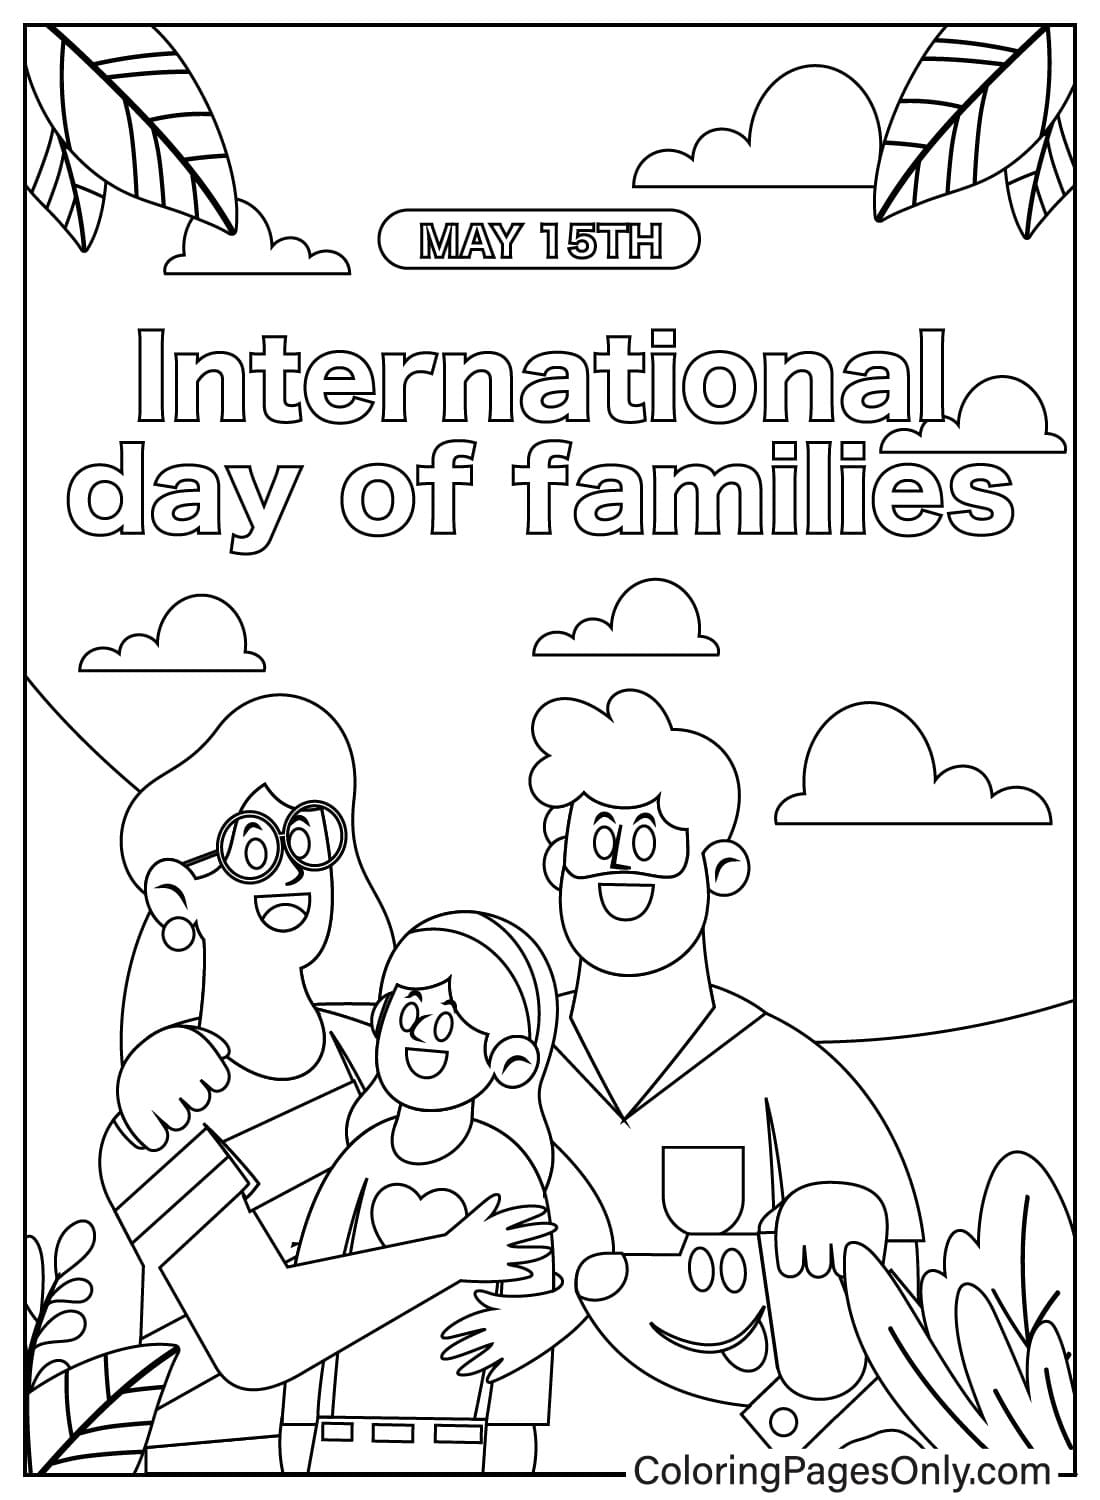 Раскраска Международный день семьи из фильма «День семьи»